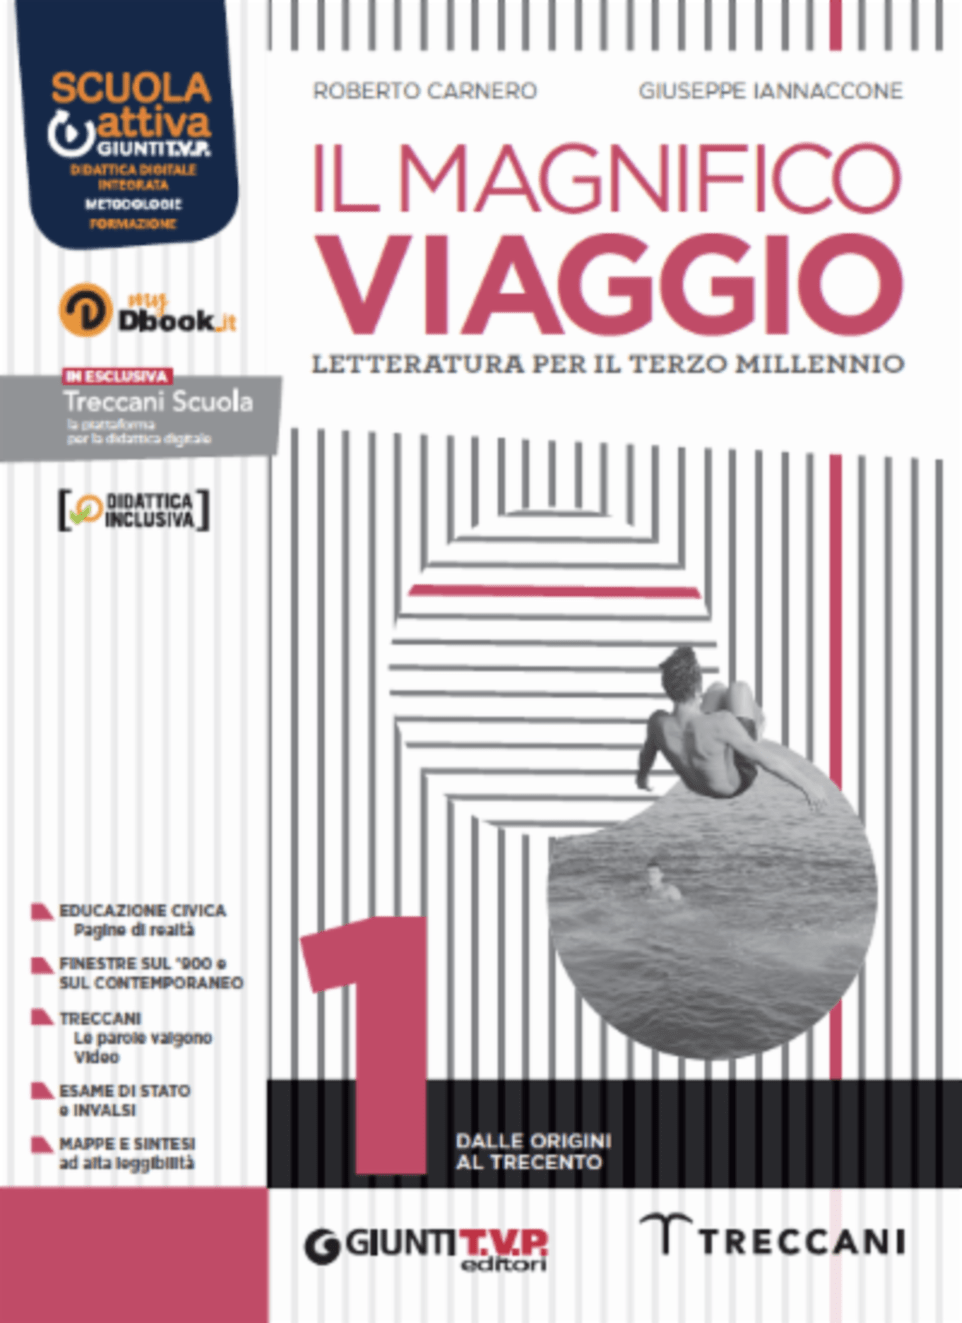 IL MAGNIFICO VIAGGIO VOL 1 + SCRITTURA + DIVINA COMMEDIA - EDIZIONE DIGITALE